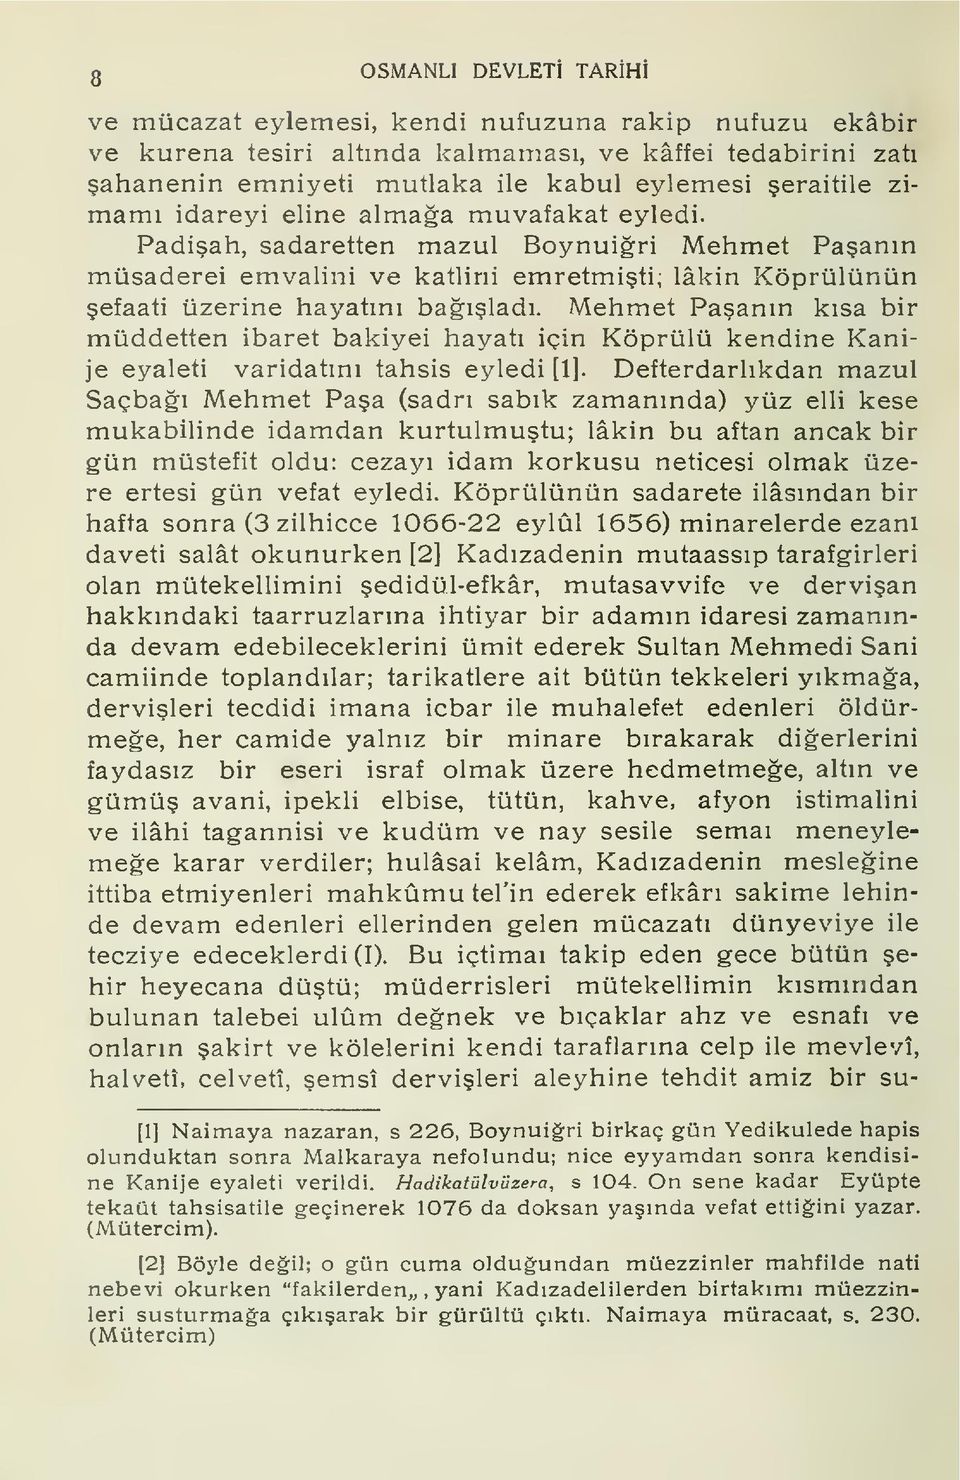 Mehmet Paann ksa bir müddetten ibaret bakiyei hayat için Köprülü kendine Kanije eyaleti varidatn tahsis eyledi [1].